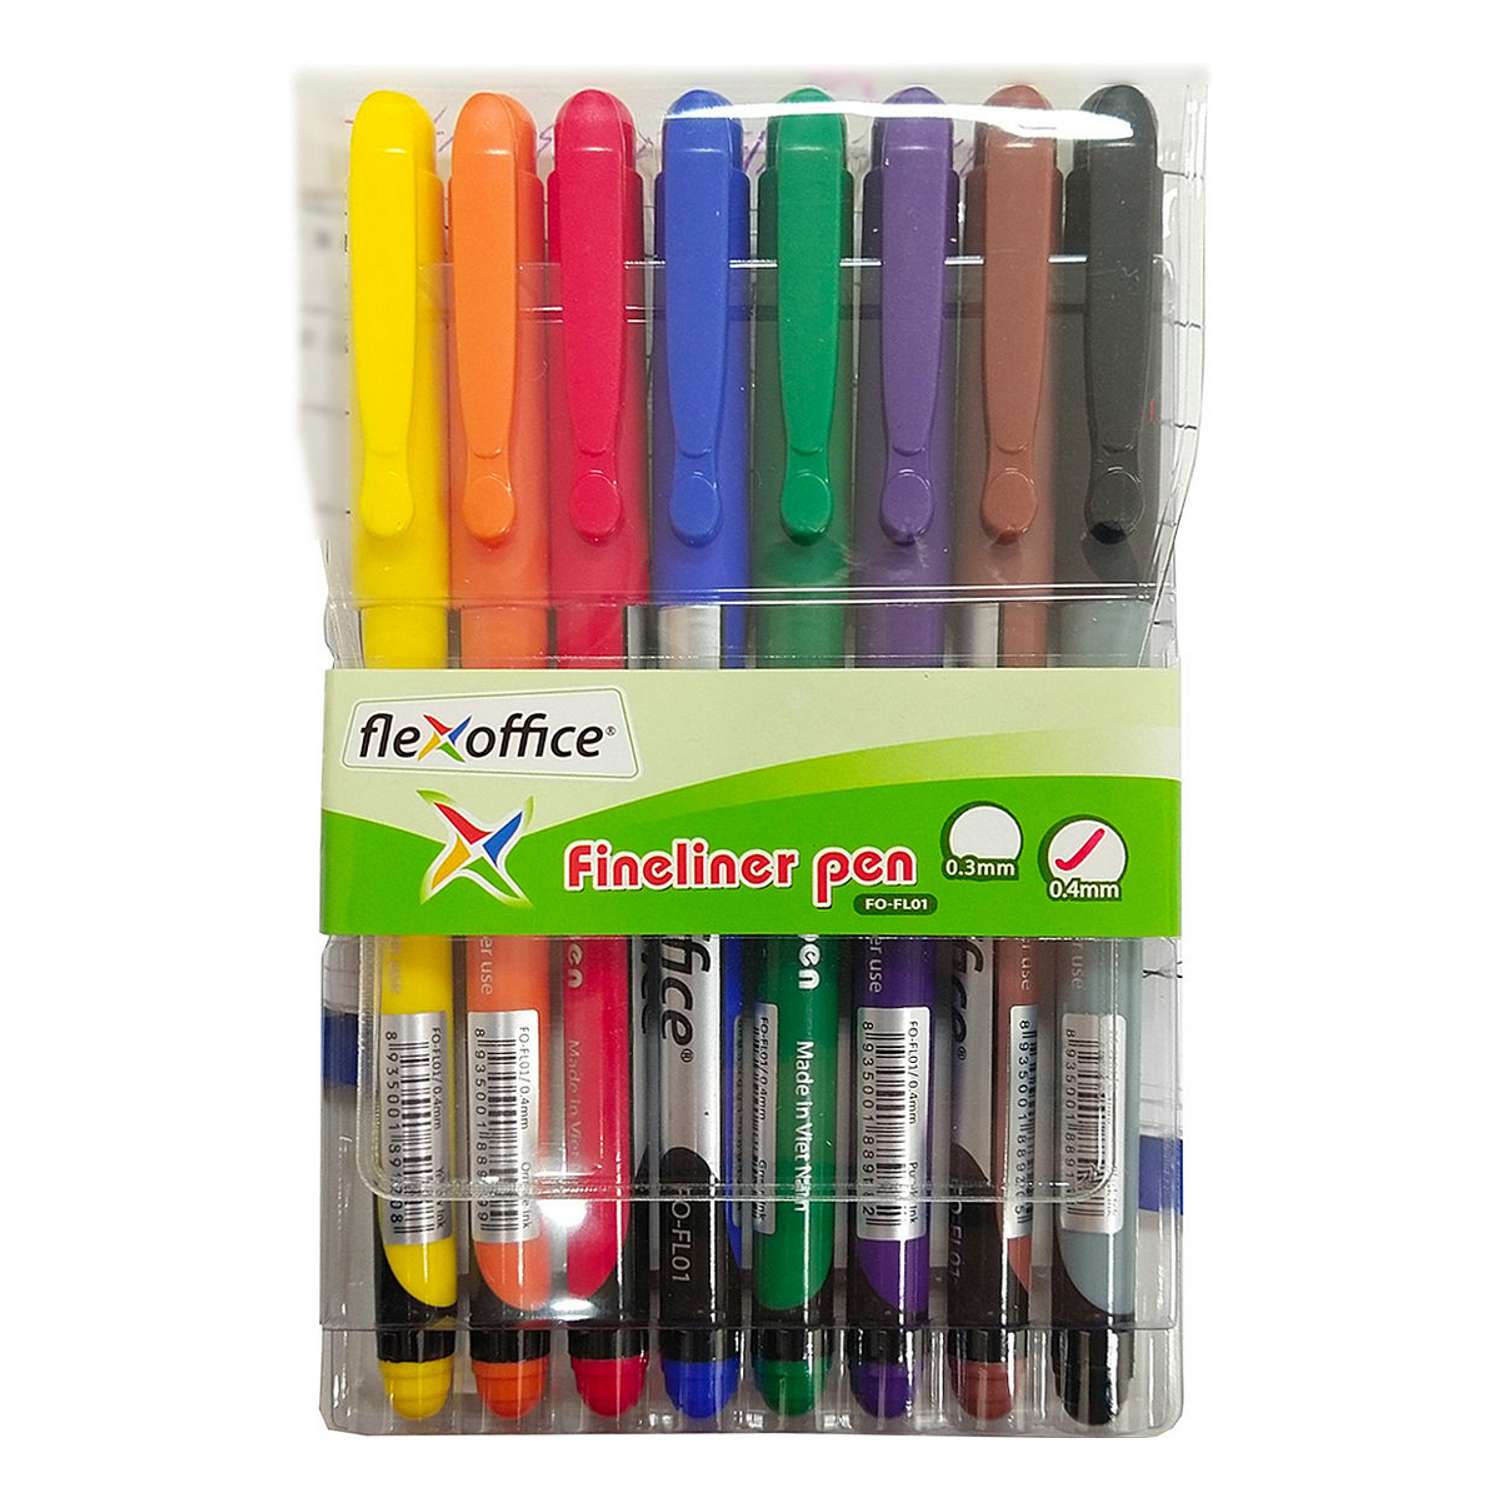 Ручки капилярные Flexoffice набор 8 штук 8 цветов ассорти 0.4мм - фото 1